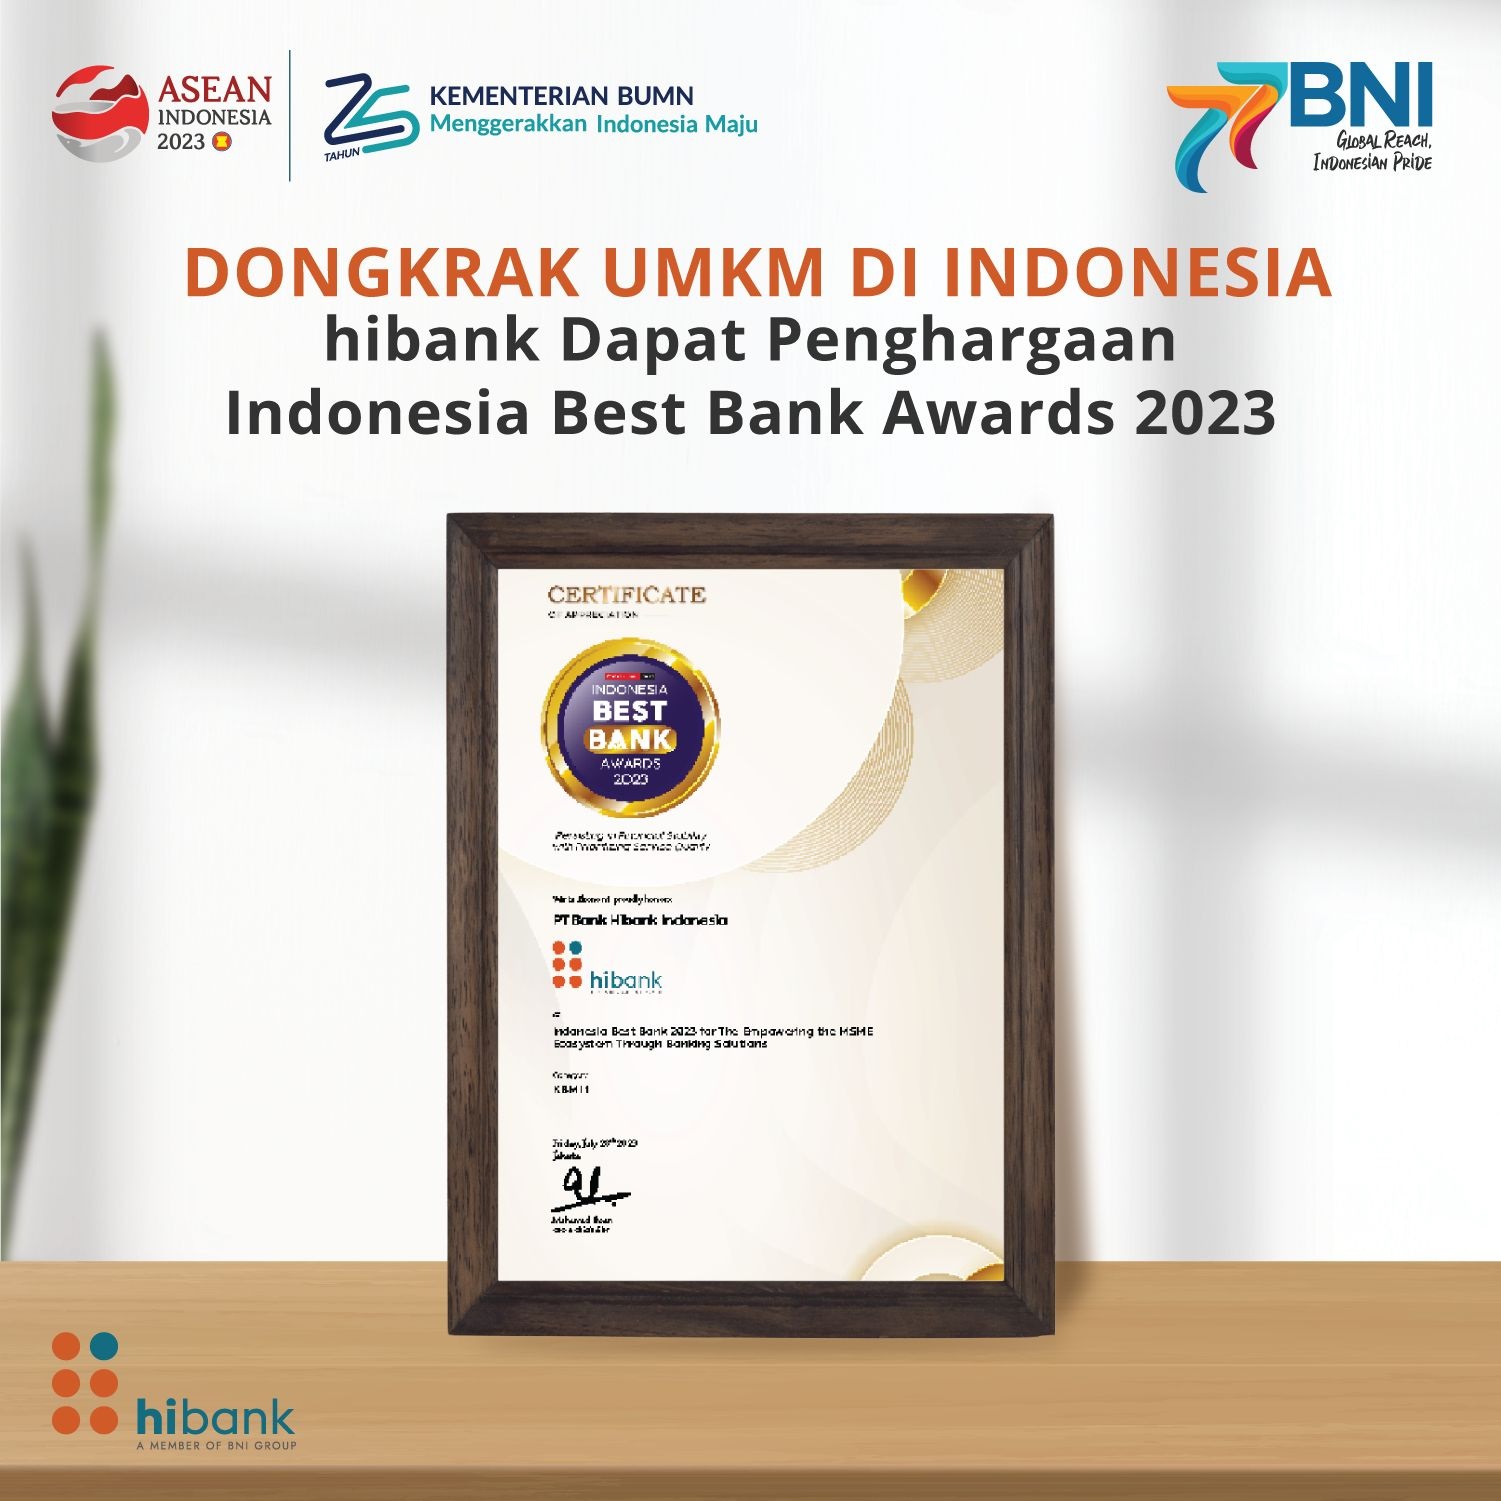 Dongkrak UMKM di Indonesia, hibank Dapat Penghargaan sebagai Indonesia Best Bank Awards 2023